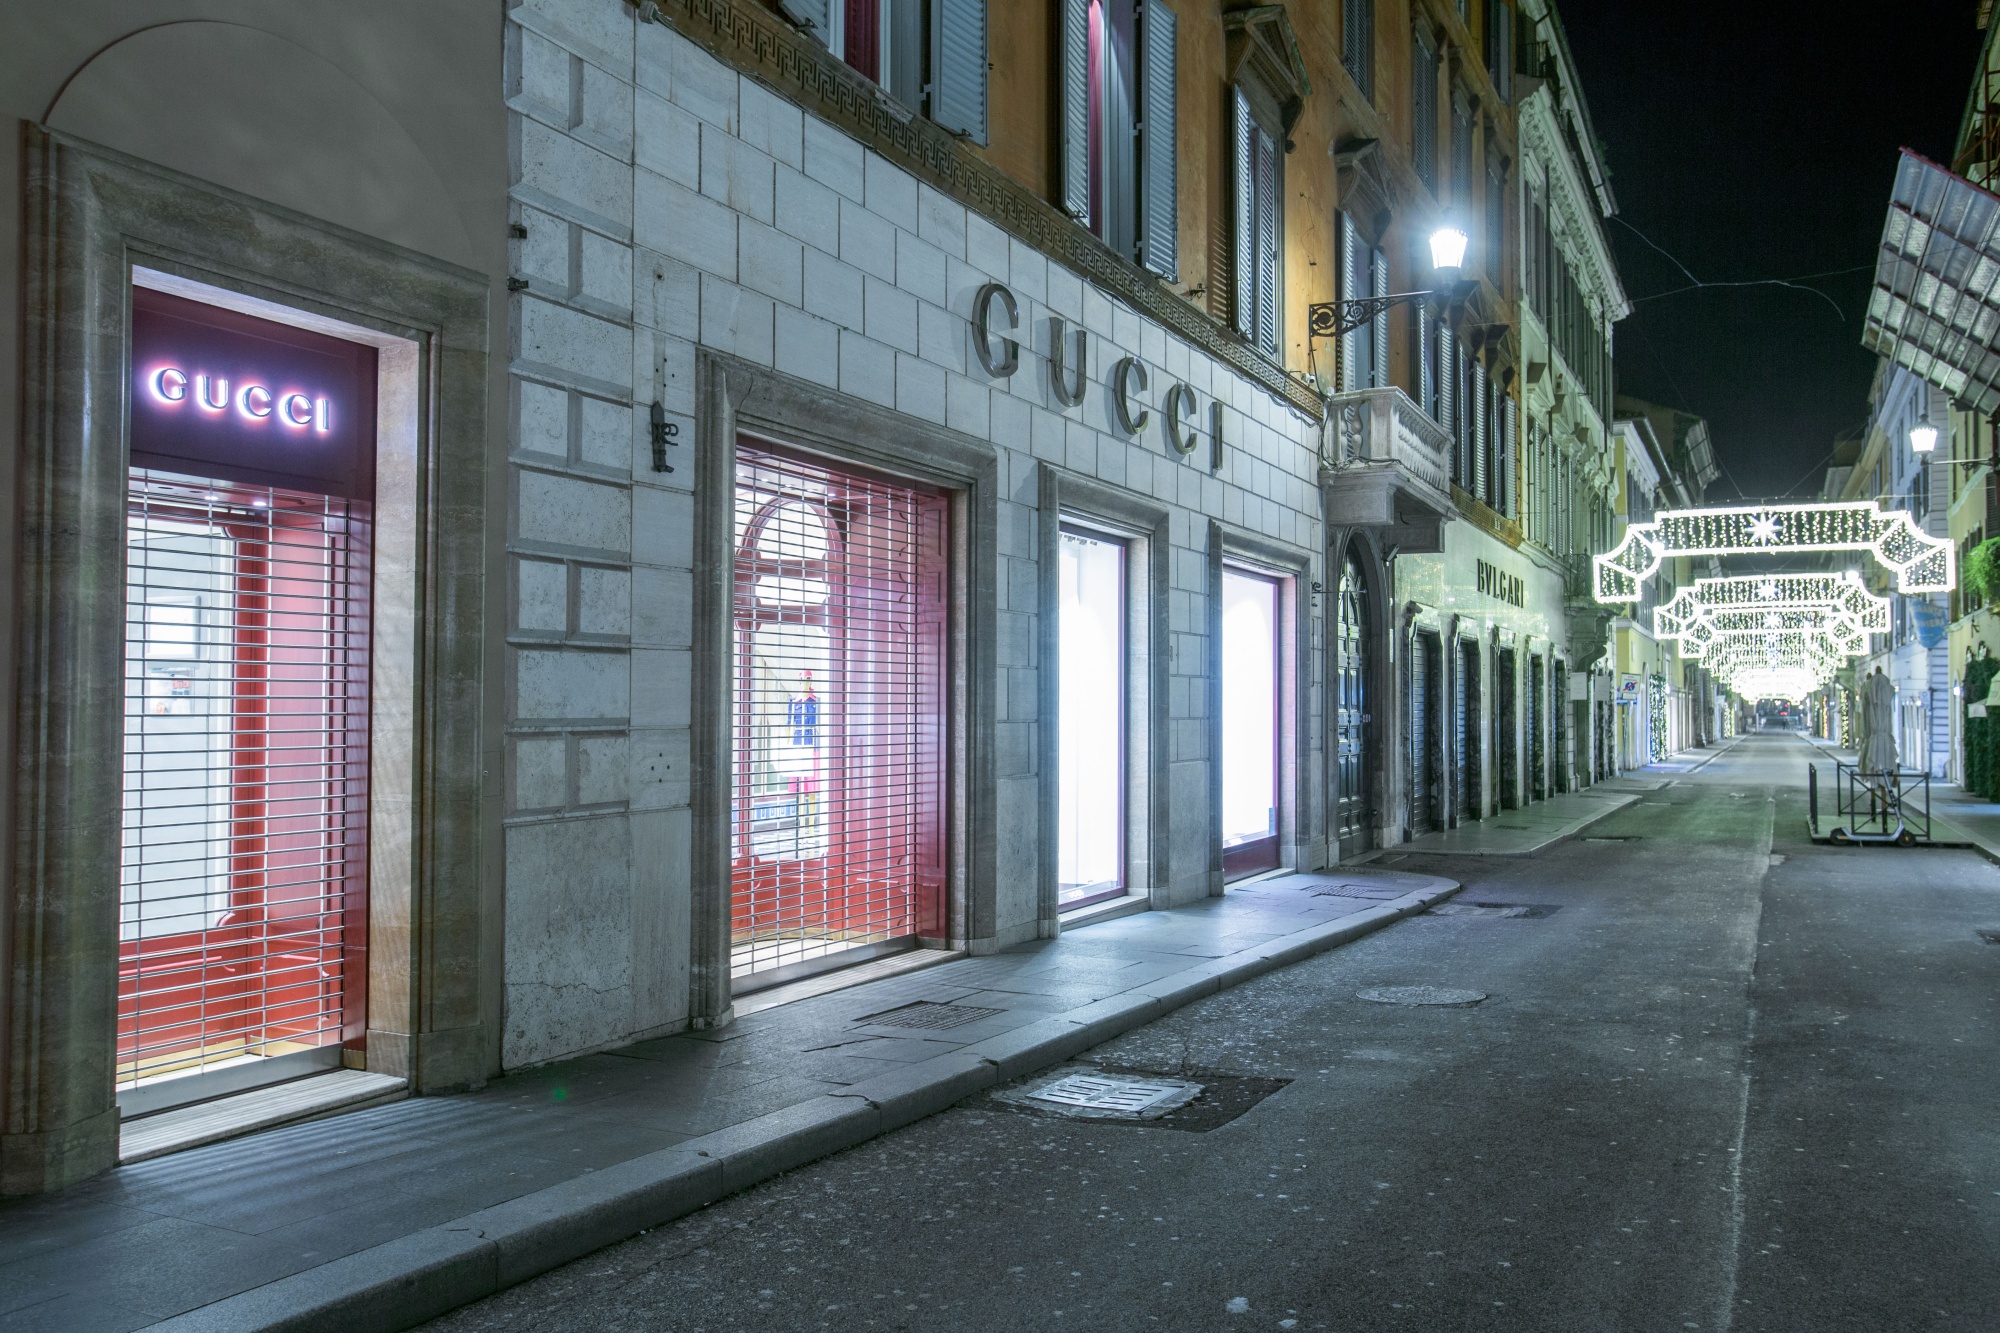 moderat klassisk åbning Gucci Sales Slide For Another Quarter, Ending Years Of Expansion